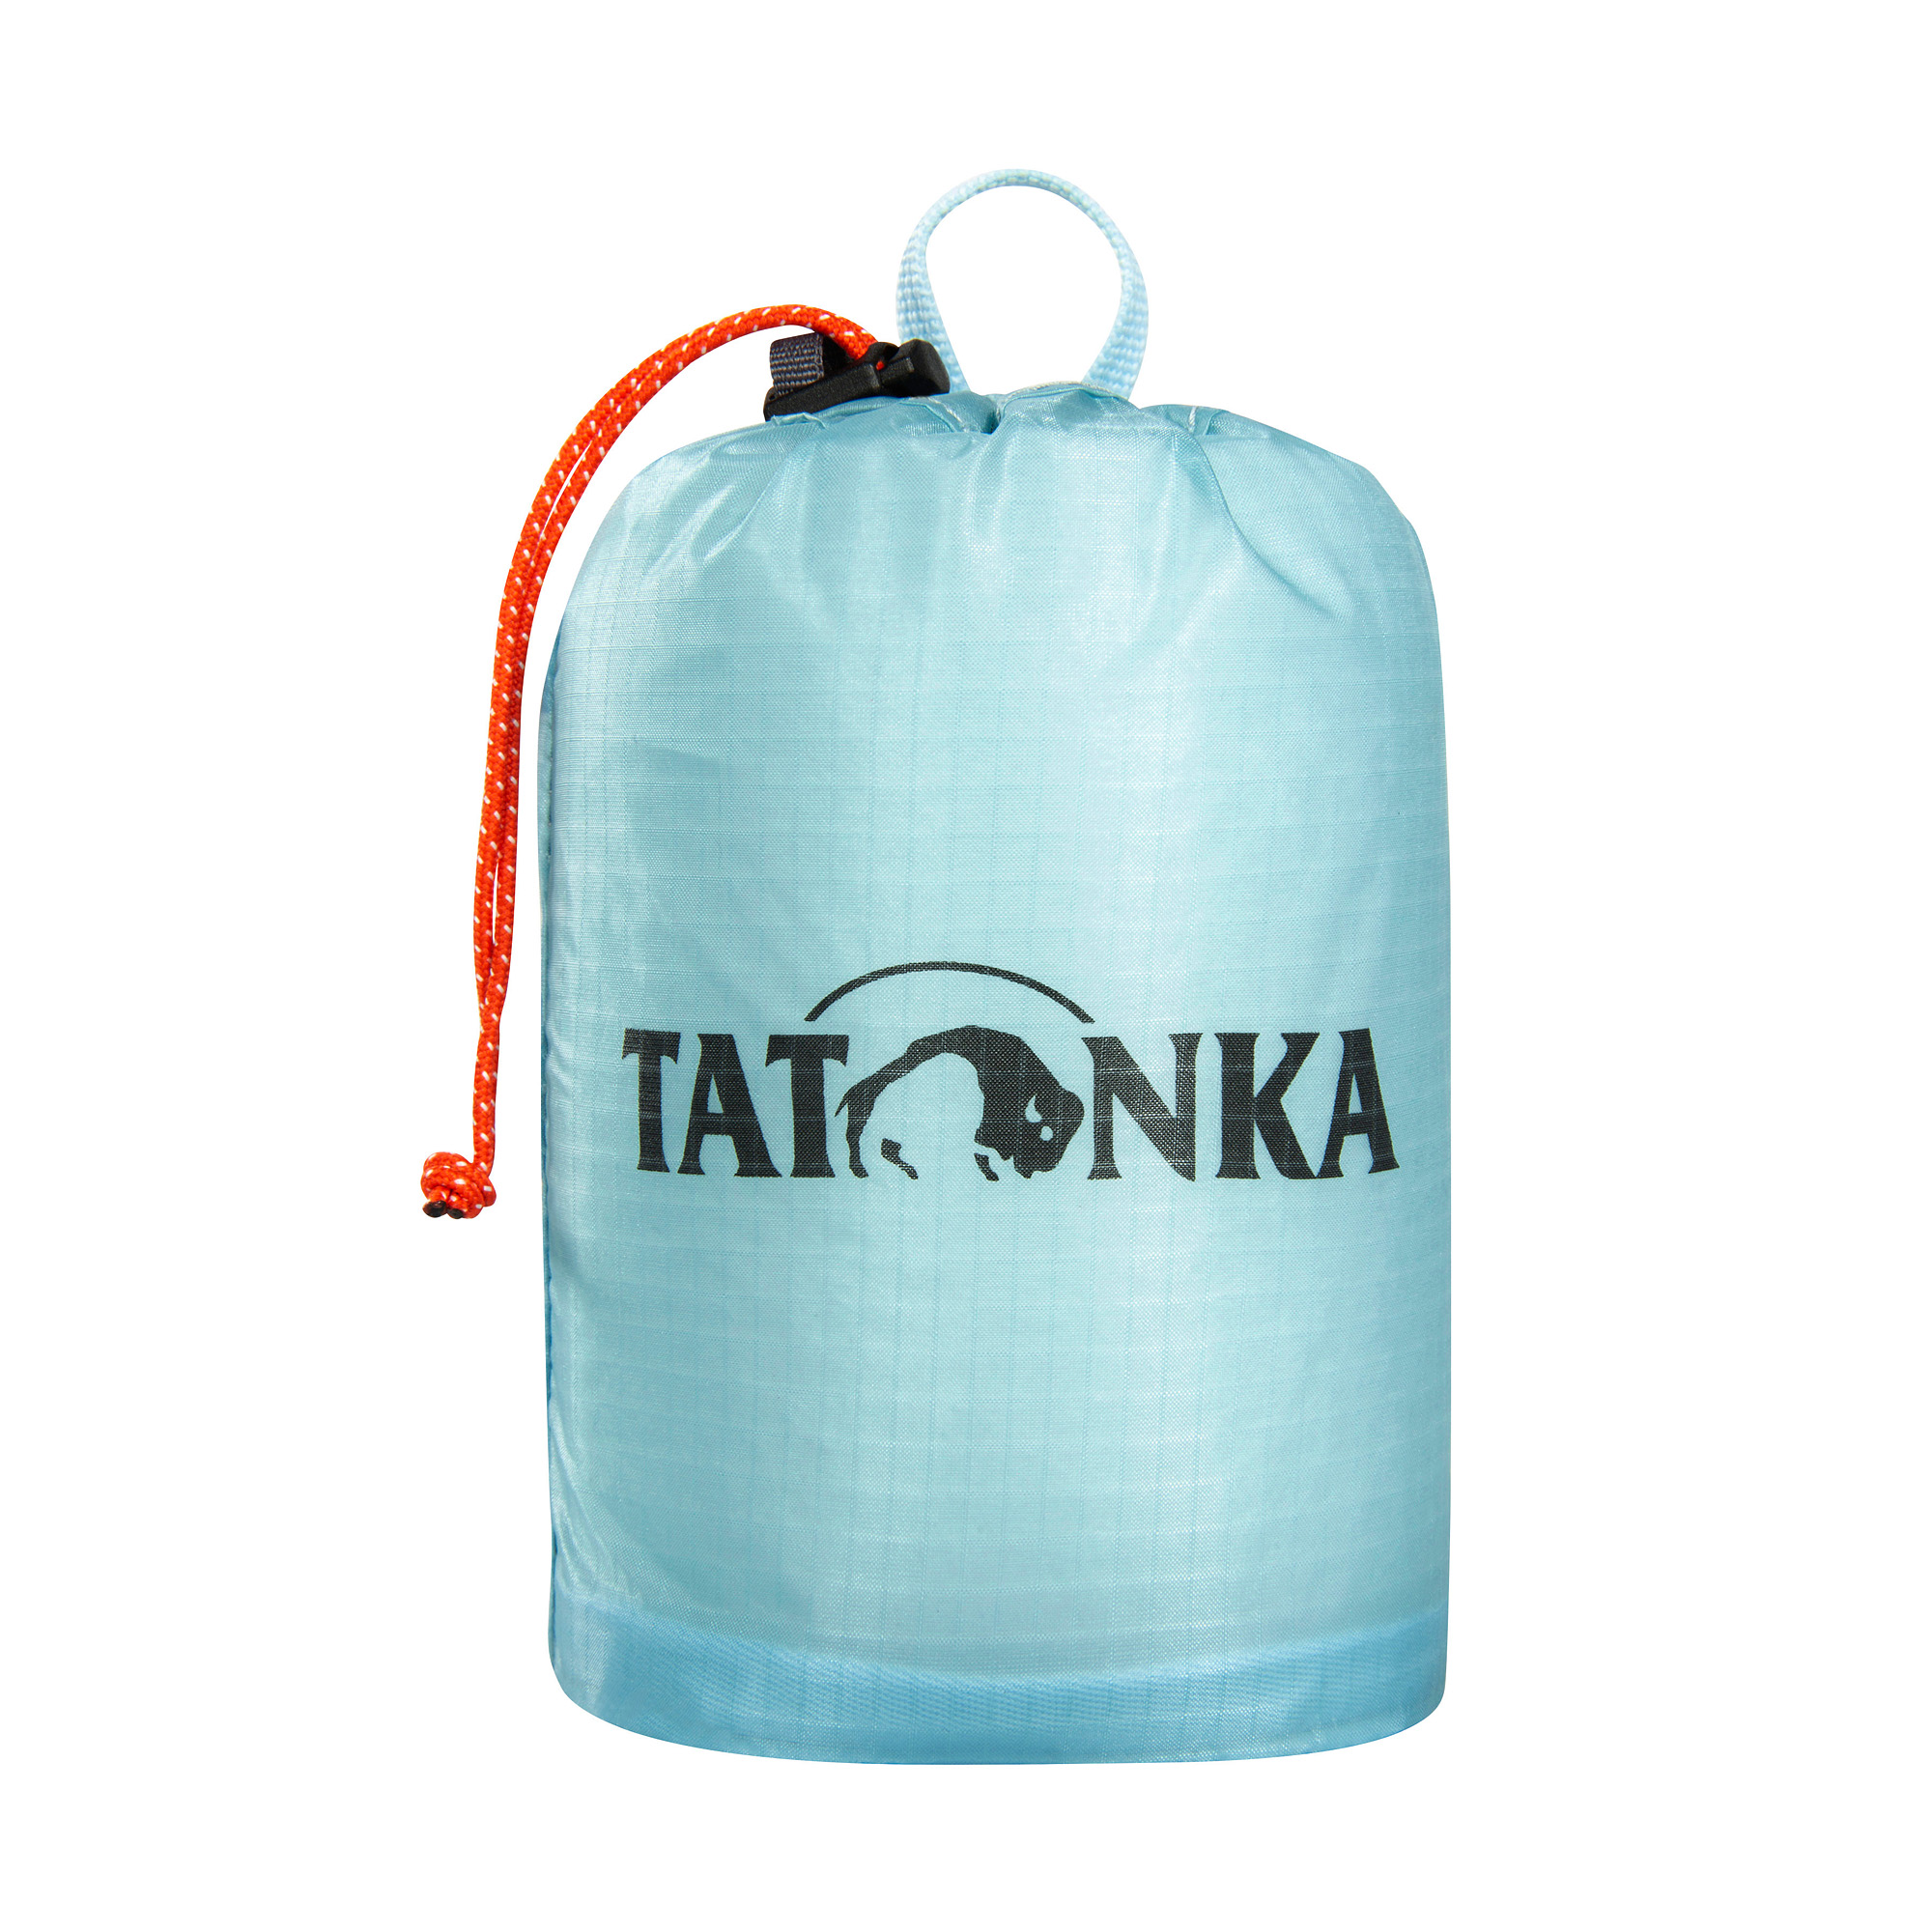 Tatonka SQZY Stuff Bag 0,5l light blue blau Reisezubehör 4013236336467